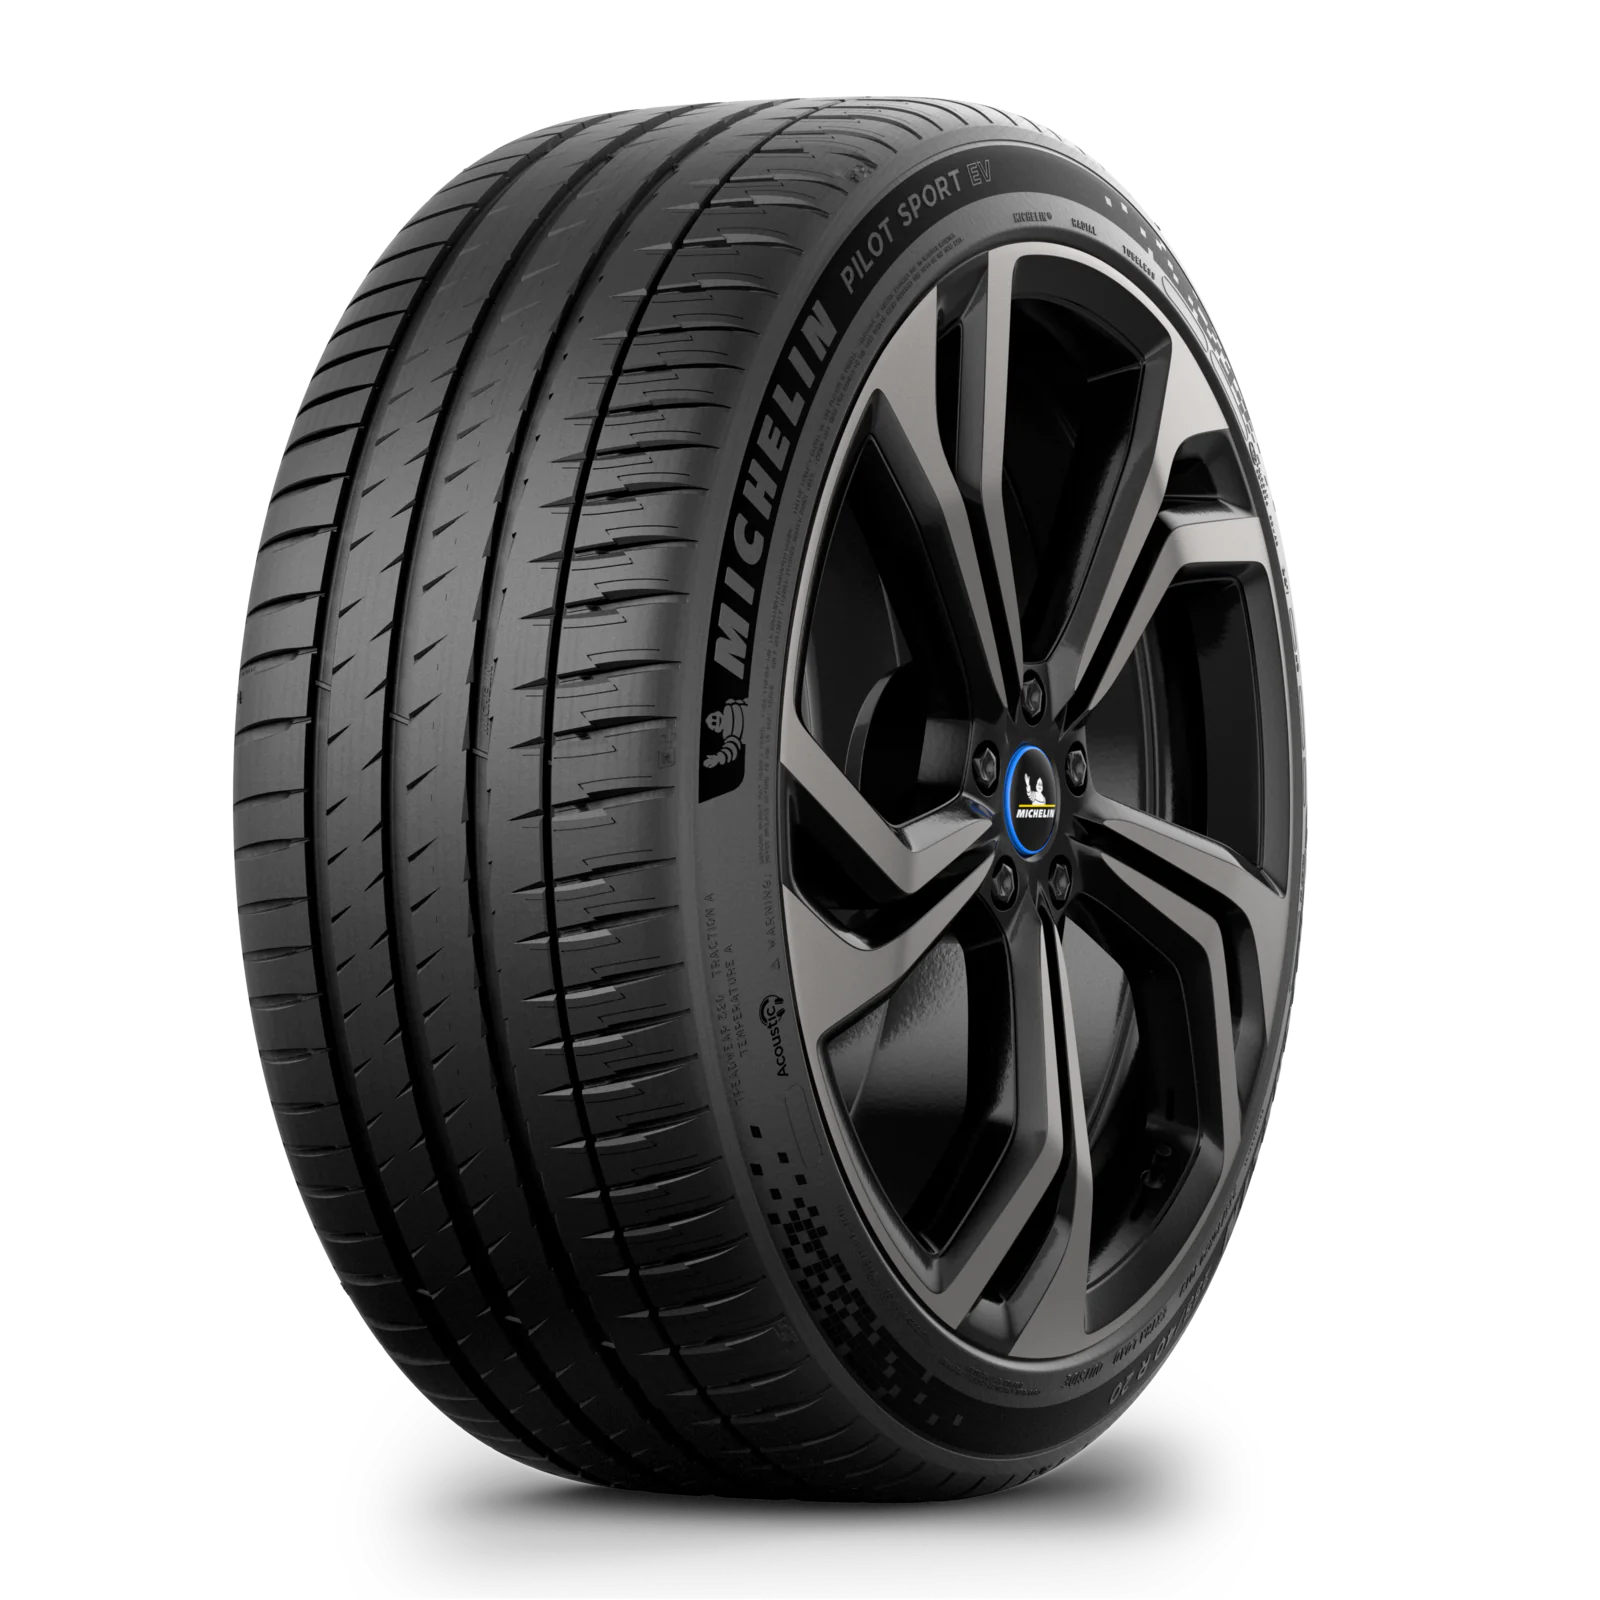 Michelin Michelin 275/40 R22 107Y Pilot Sport EV Acoustic XL pneumatici nuovi Estivo 